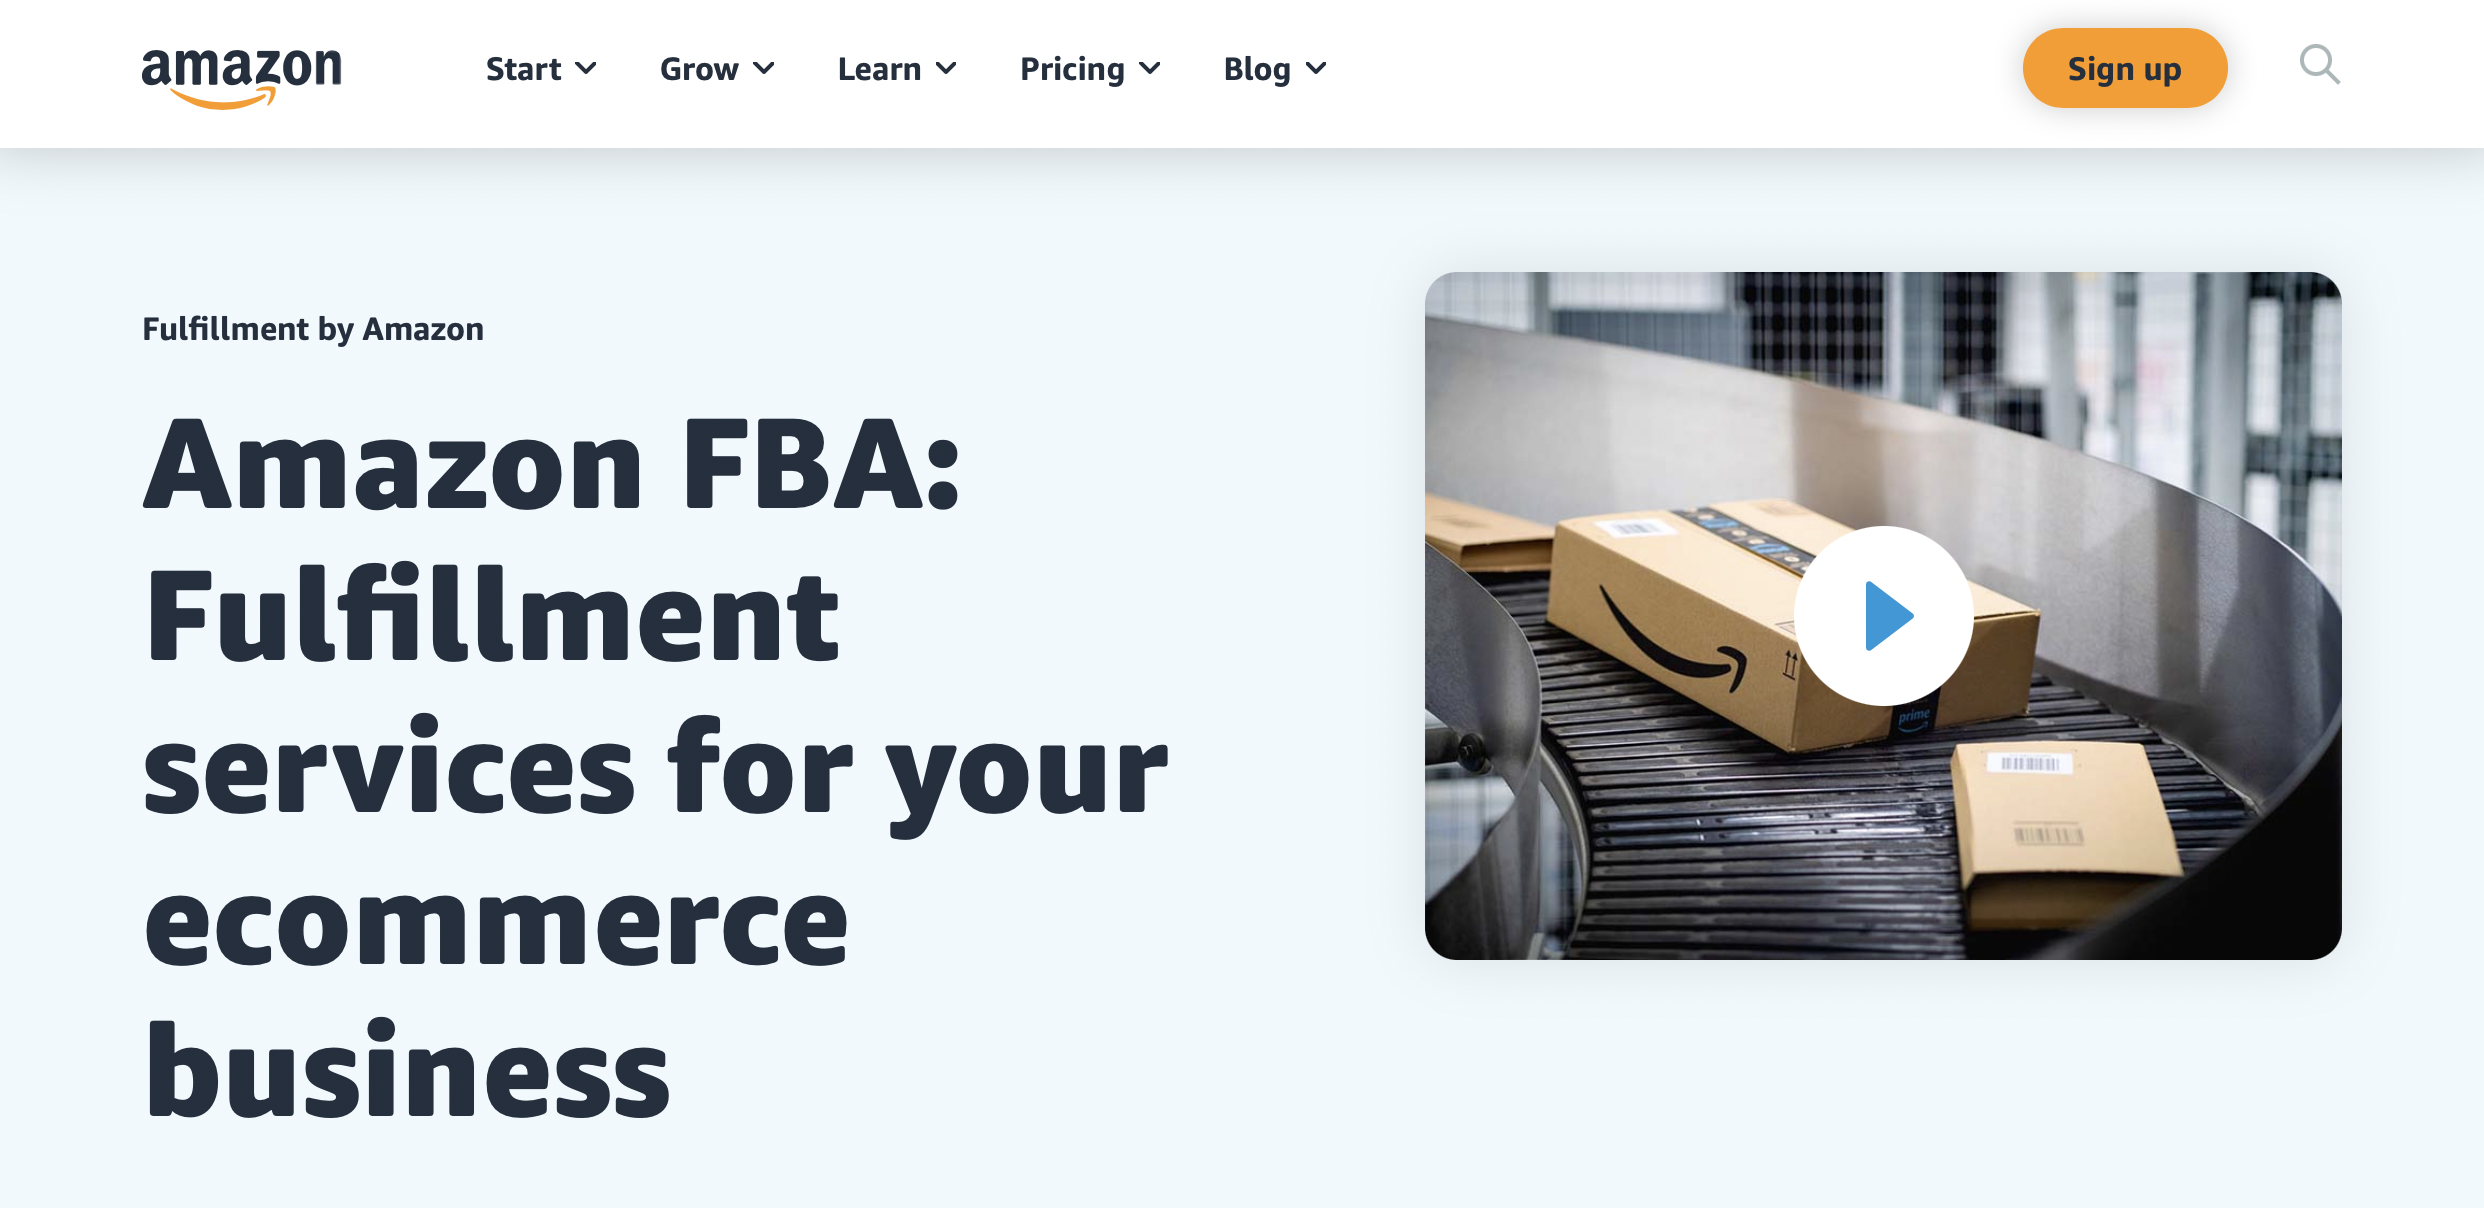 Как пользоваться Amazon FBA на максимум?